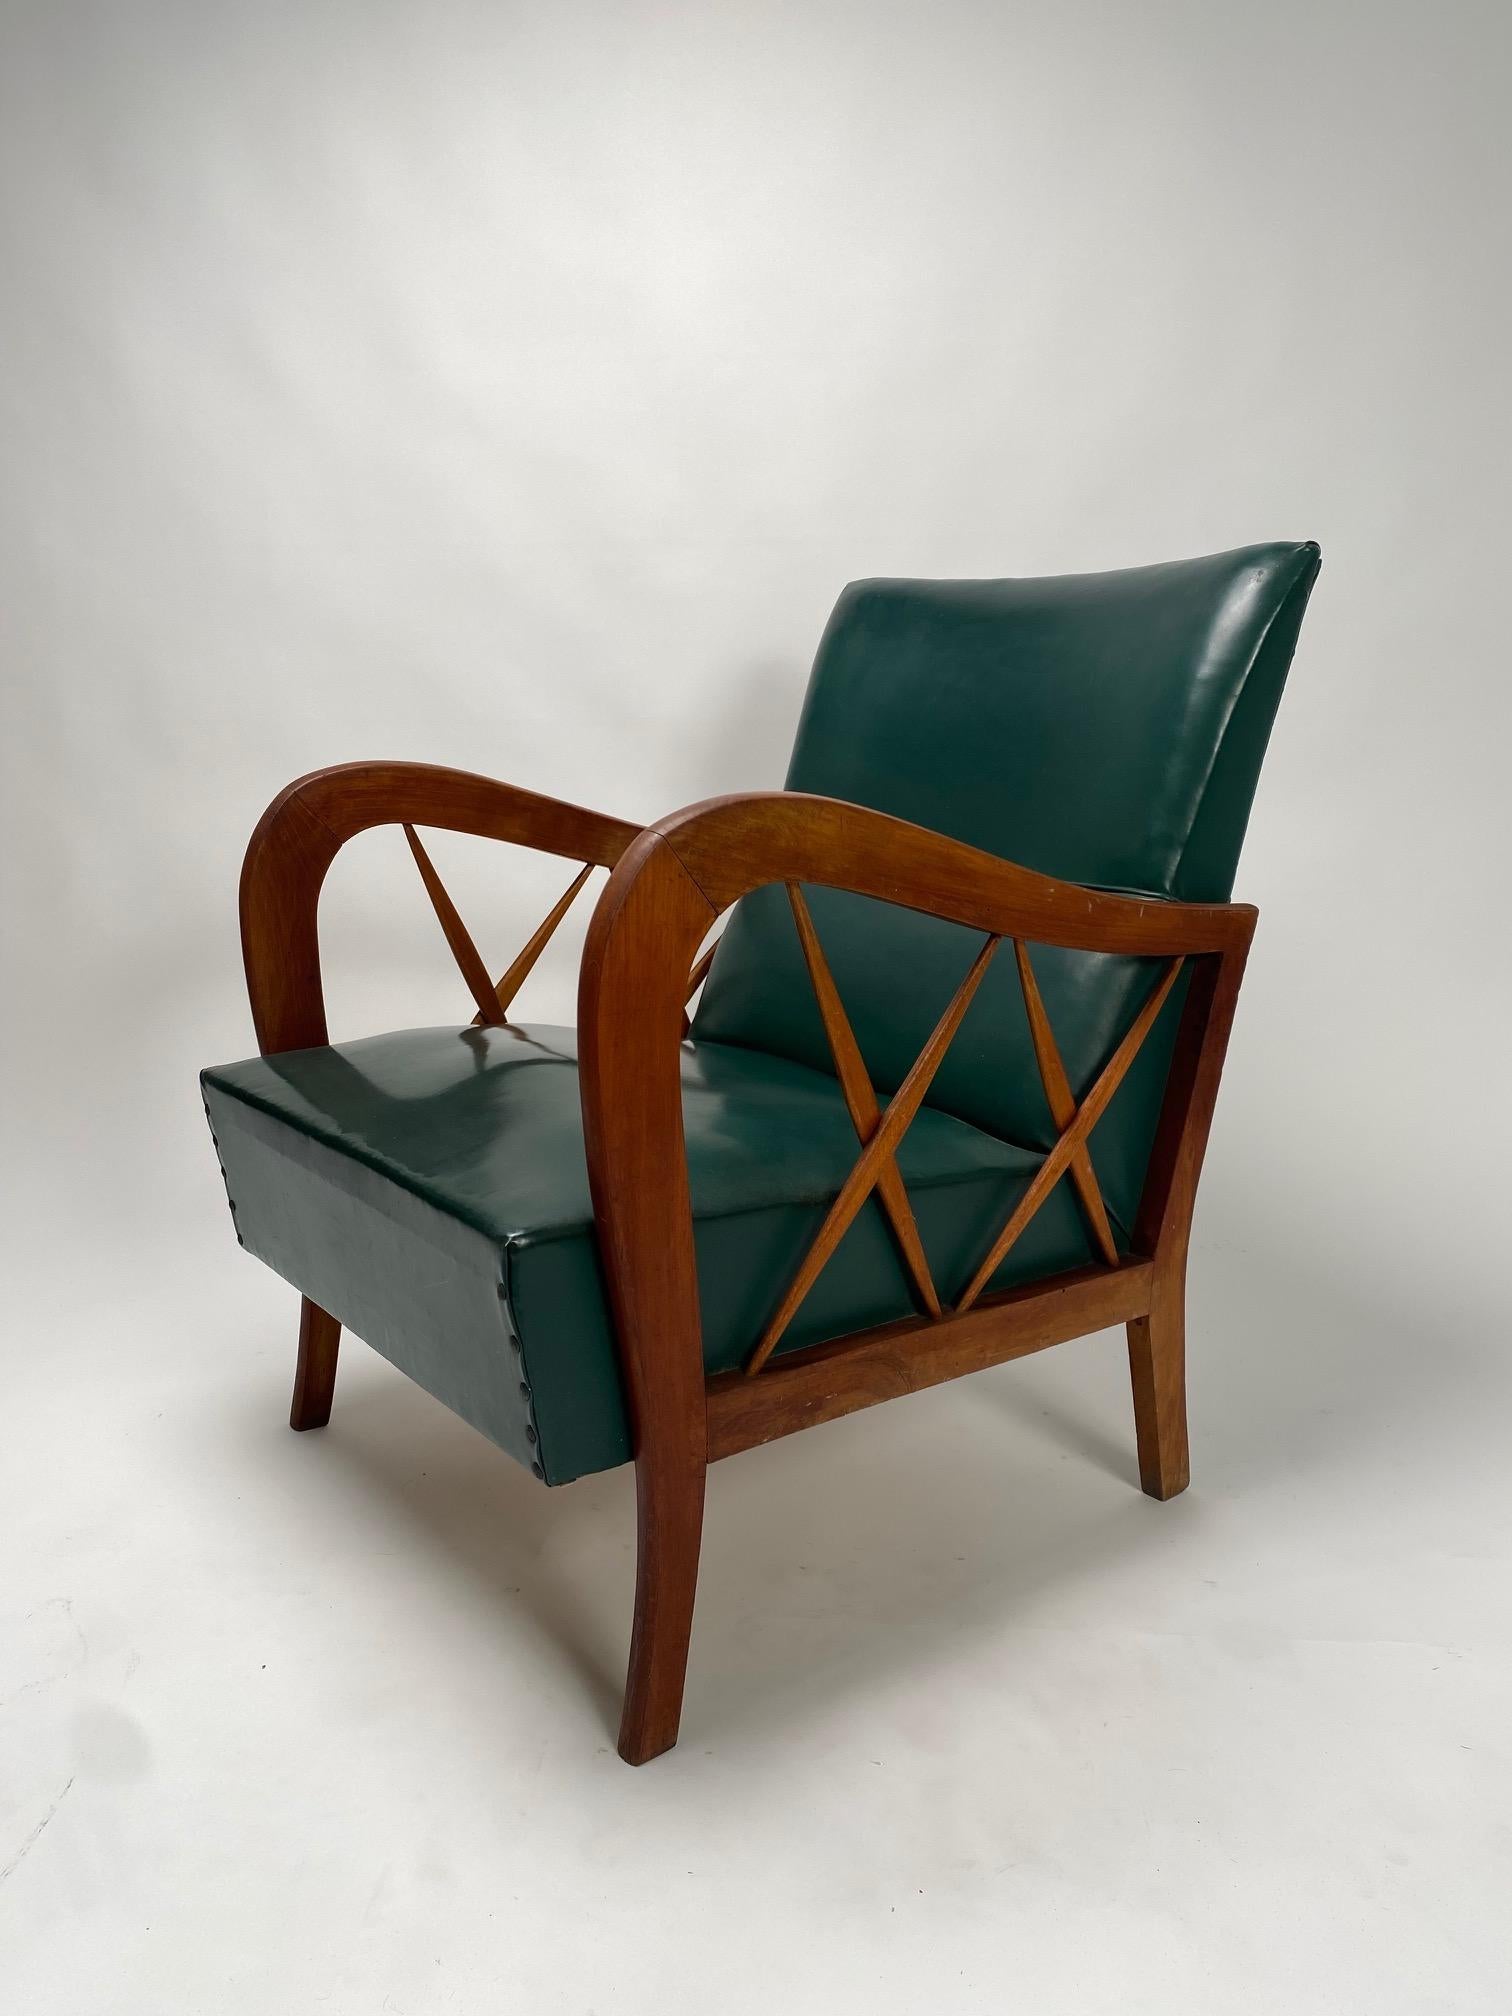 Paire de fauteuils en bois massif attribuable à Paolo Buffa, Italie, années 1950 (Personnalisable)

Les deux fauteuils présentent une structure en bois massif avec le motif classique en 